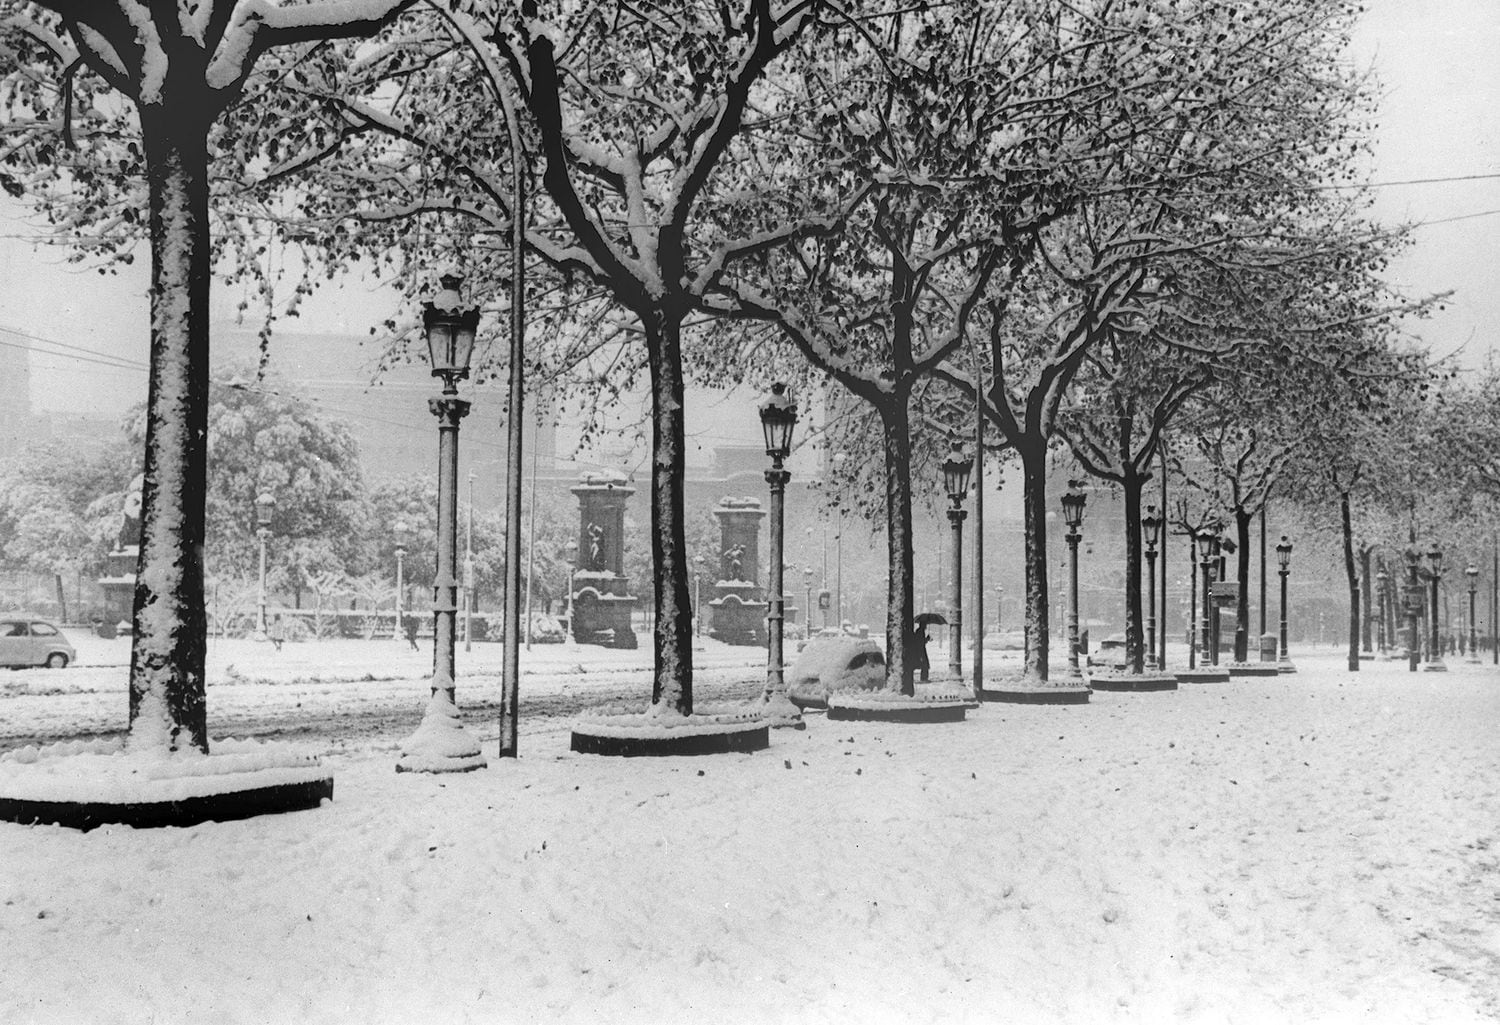 El paseo de Gracia, con la plaza de Cataluña al fondo, bajo la gran nevada caída en Barcelona en 1962.